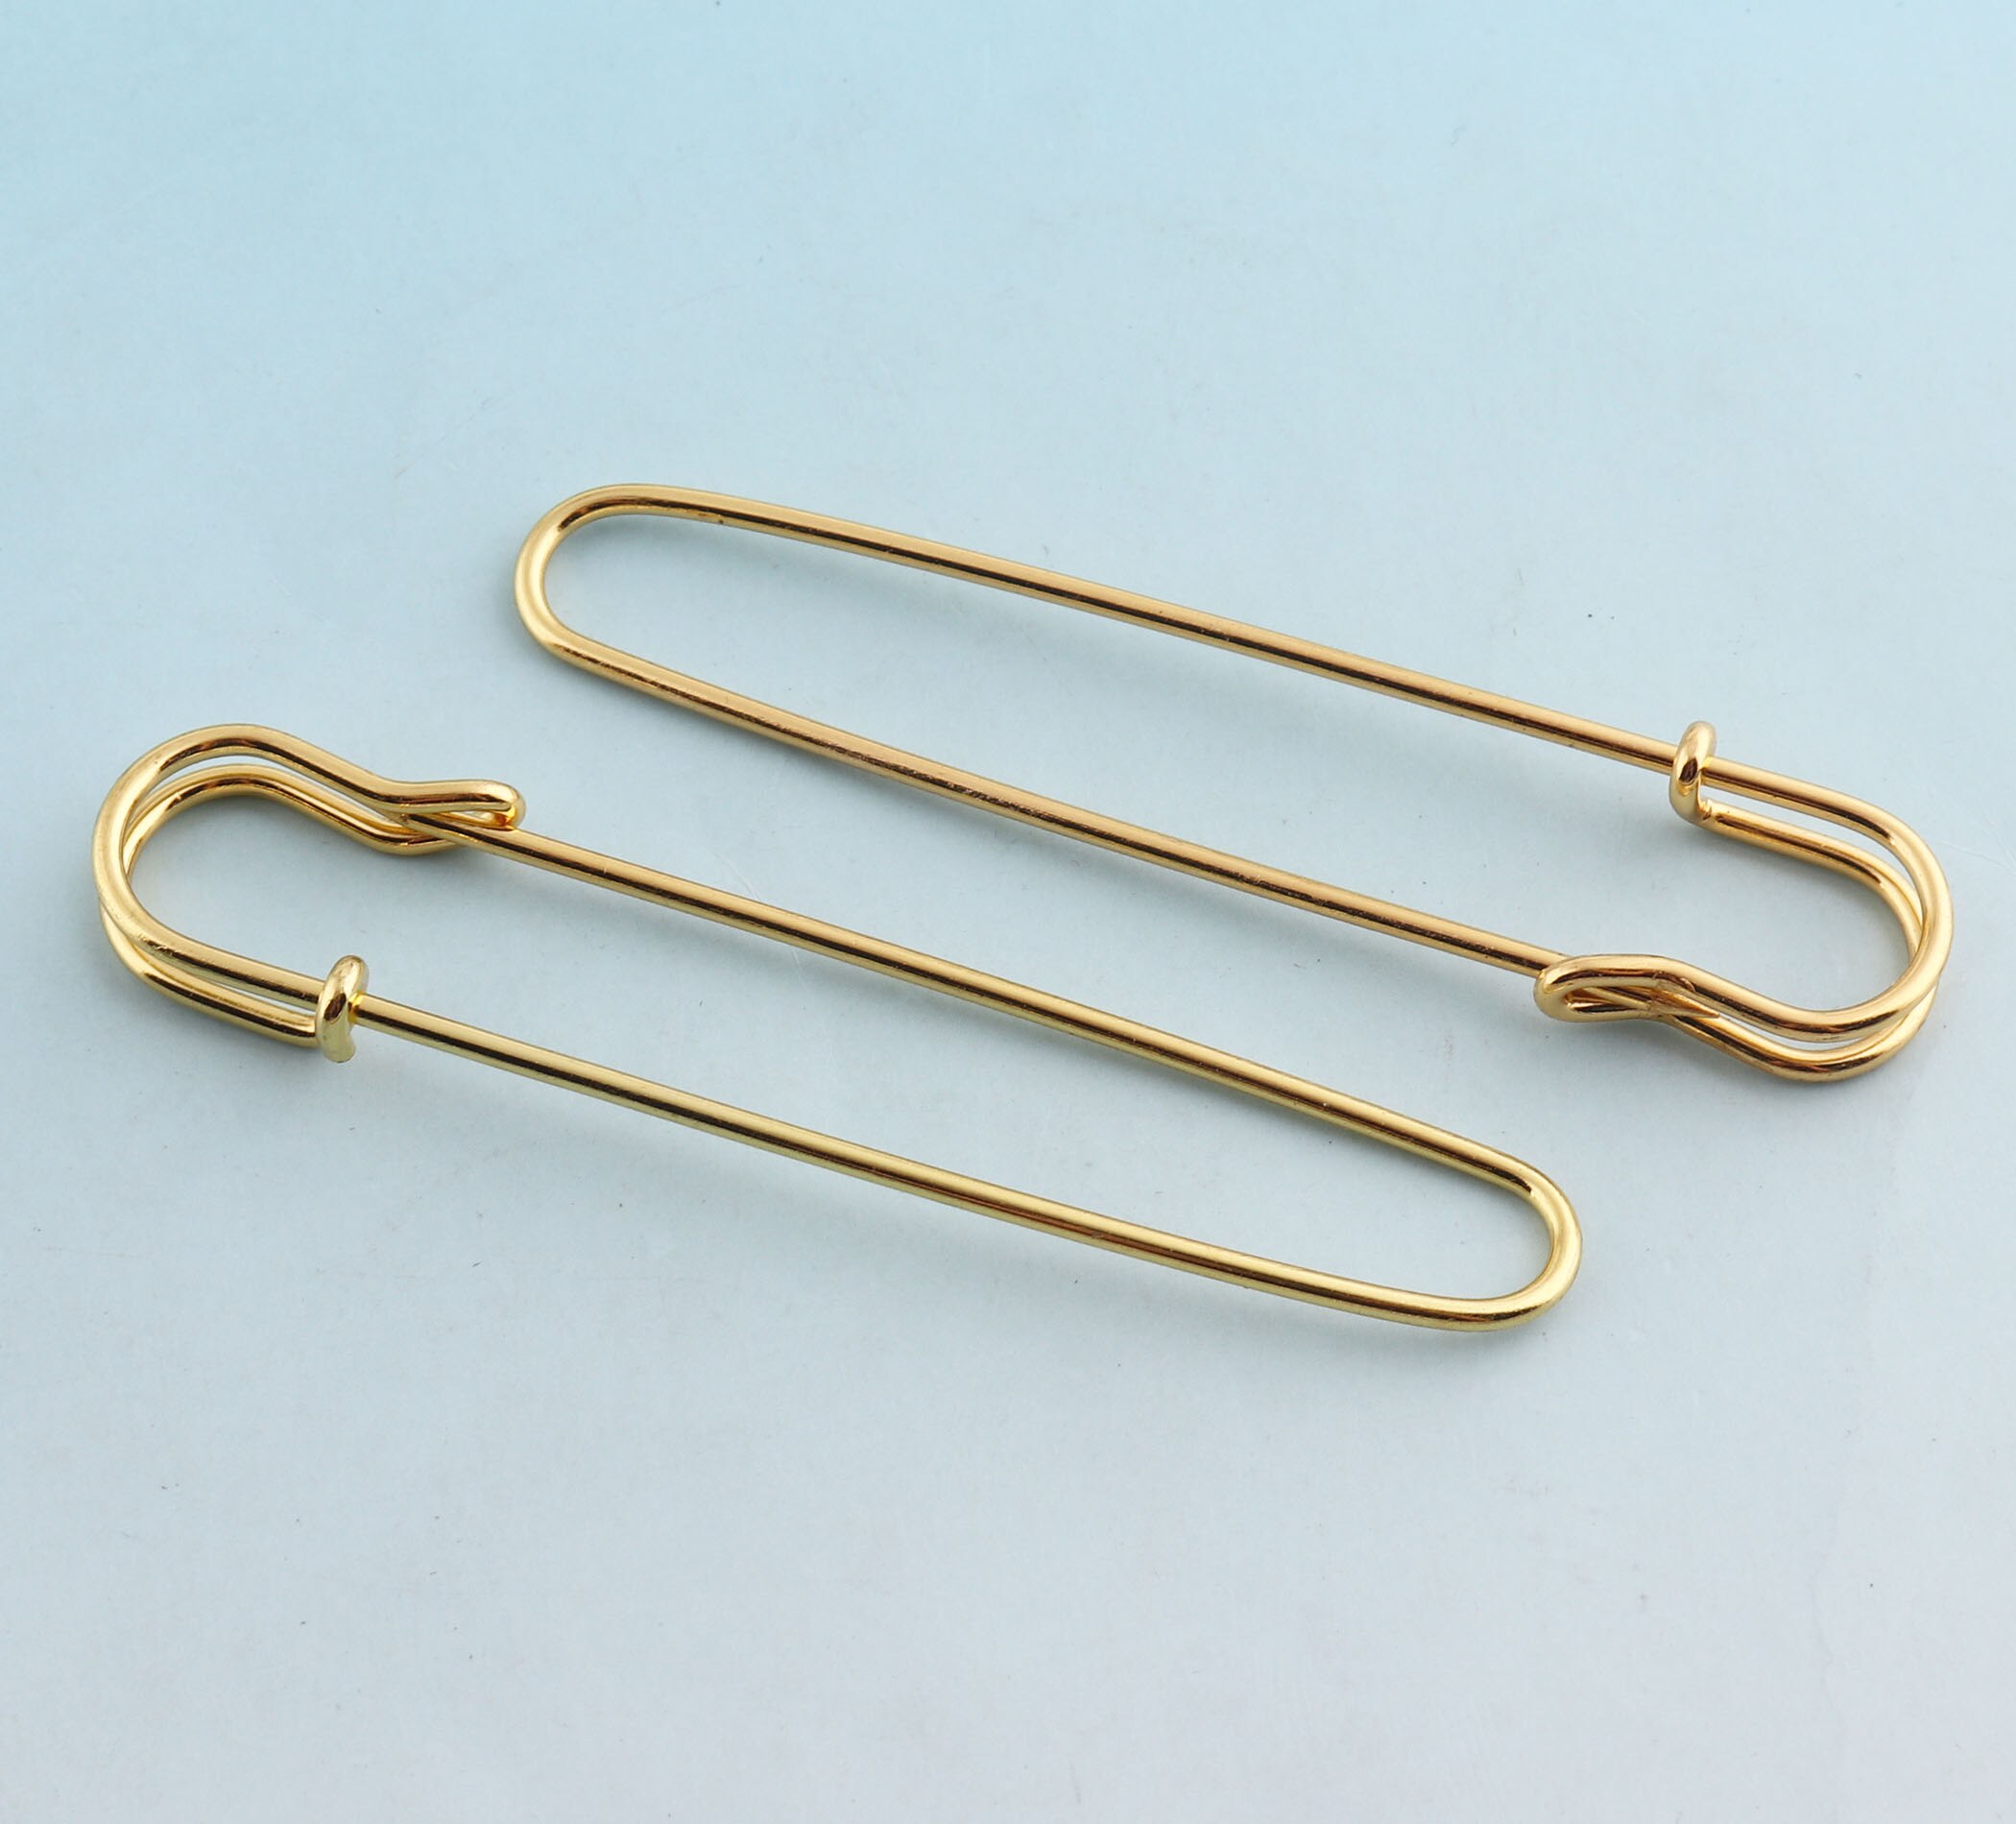 Jumbo sikkerhedsnåle 85mm store sikkerhedsnåle rose guld sikkerhedsnåle håndværksfund metalnåle broche sikkerhedsnåle diy syværktøj: Guld